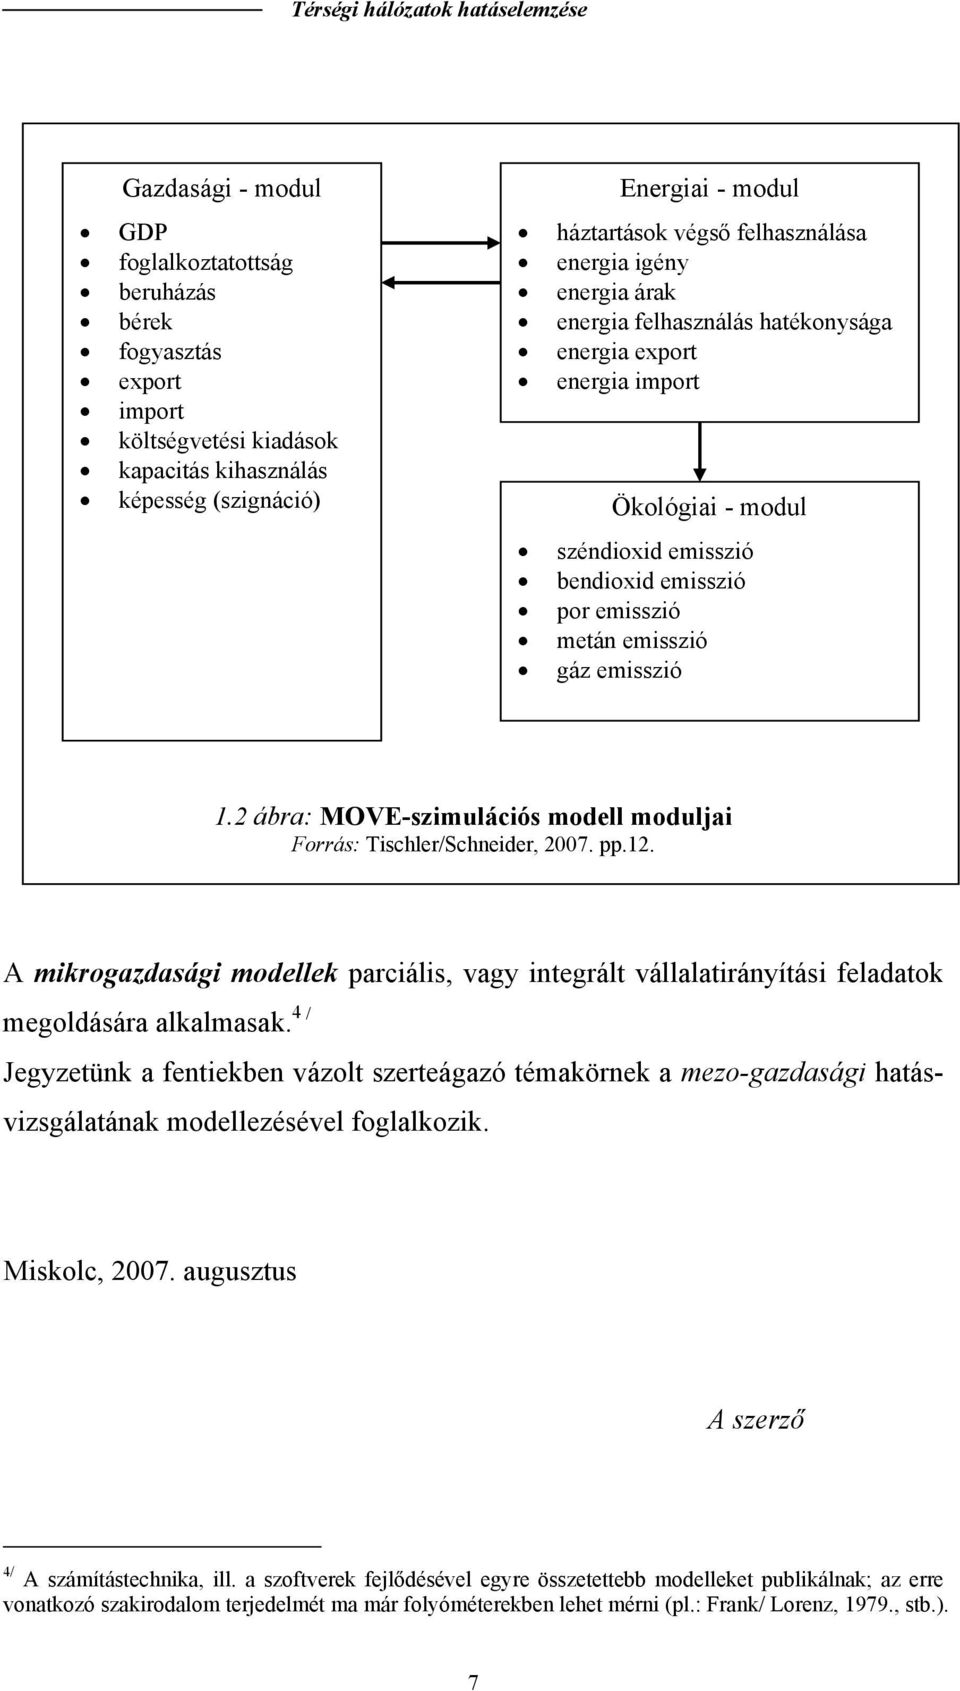 emisszió 1.2 ábra: MOVE-szimulációs modell moduljai Forrás: Tischler/Schneider, 2007. pp.12. A mikrogazdasági modellek parciális, vagy inegrál vállalairányíási feladaok megoldására alkalmasak.